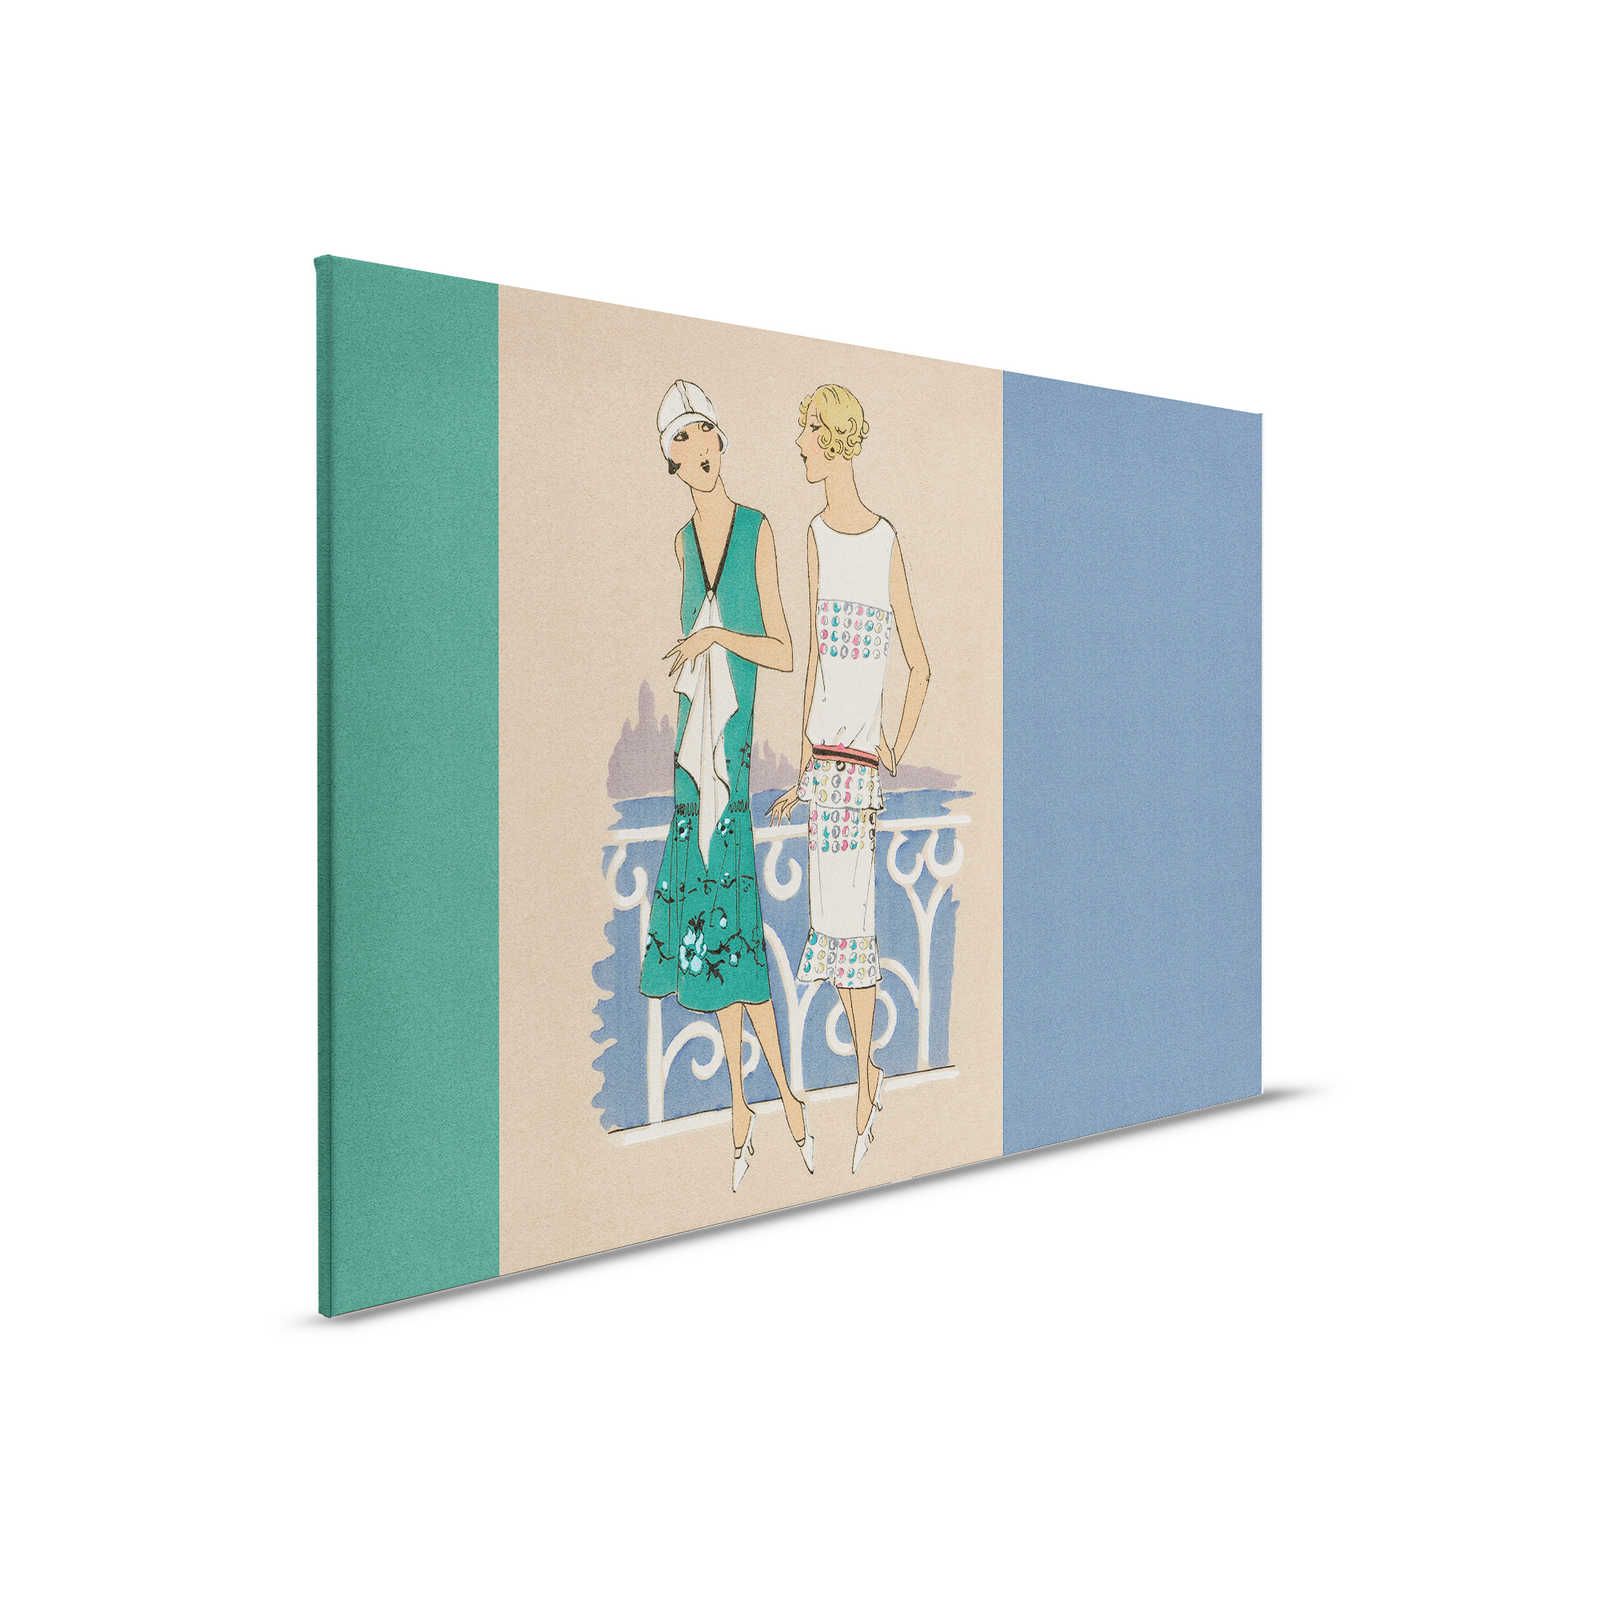 Parisienne 3 - Quadro retrò su tela stampa moda anni '20 in blu e verde - 0,90 m x 0,60 m
